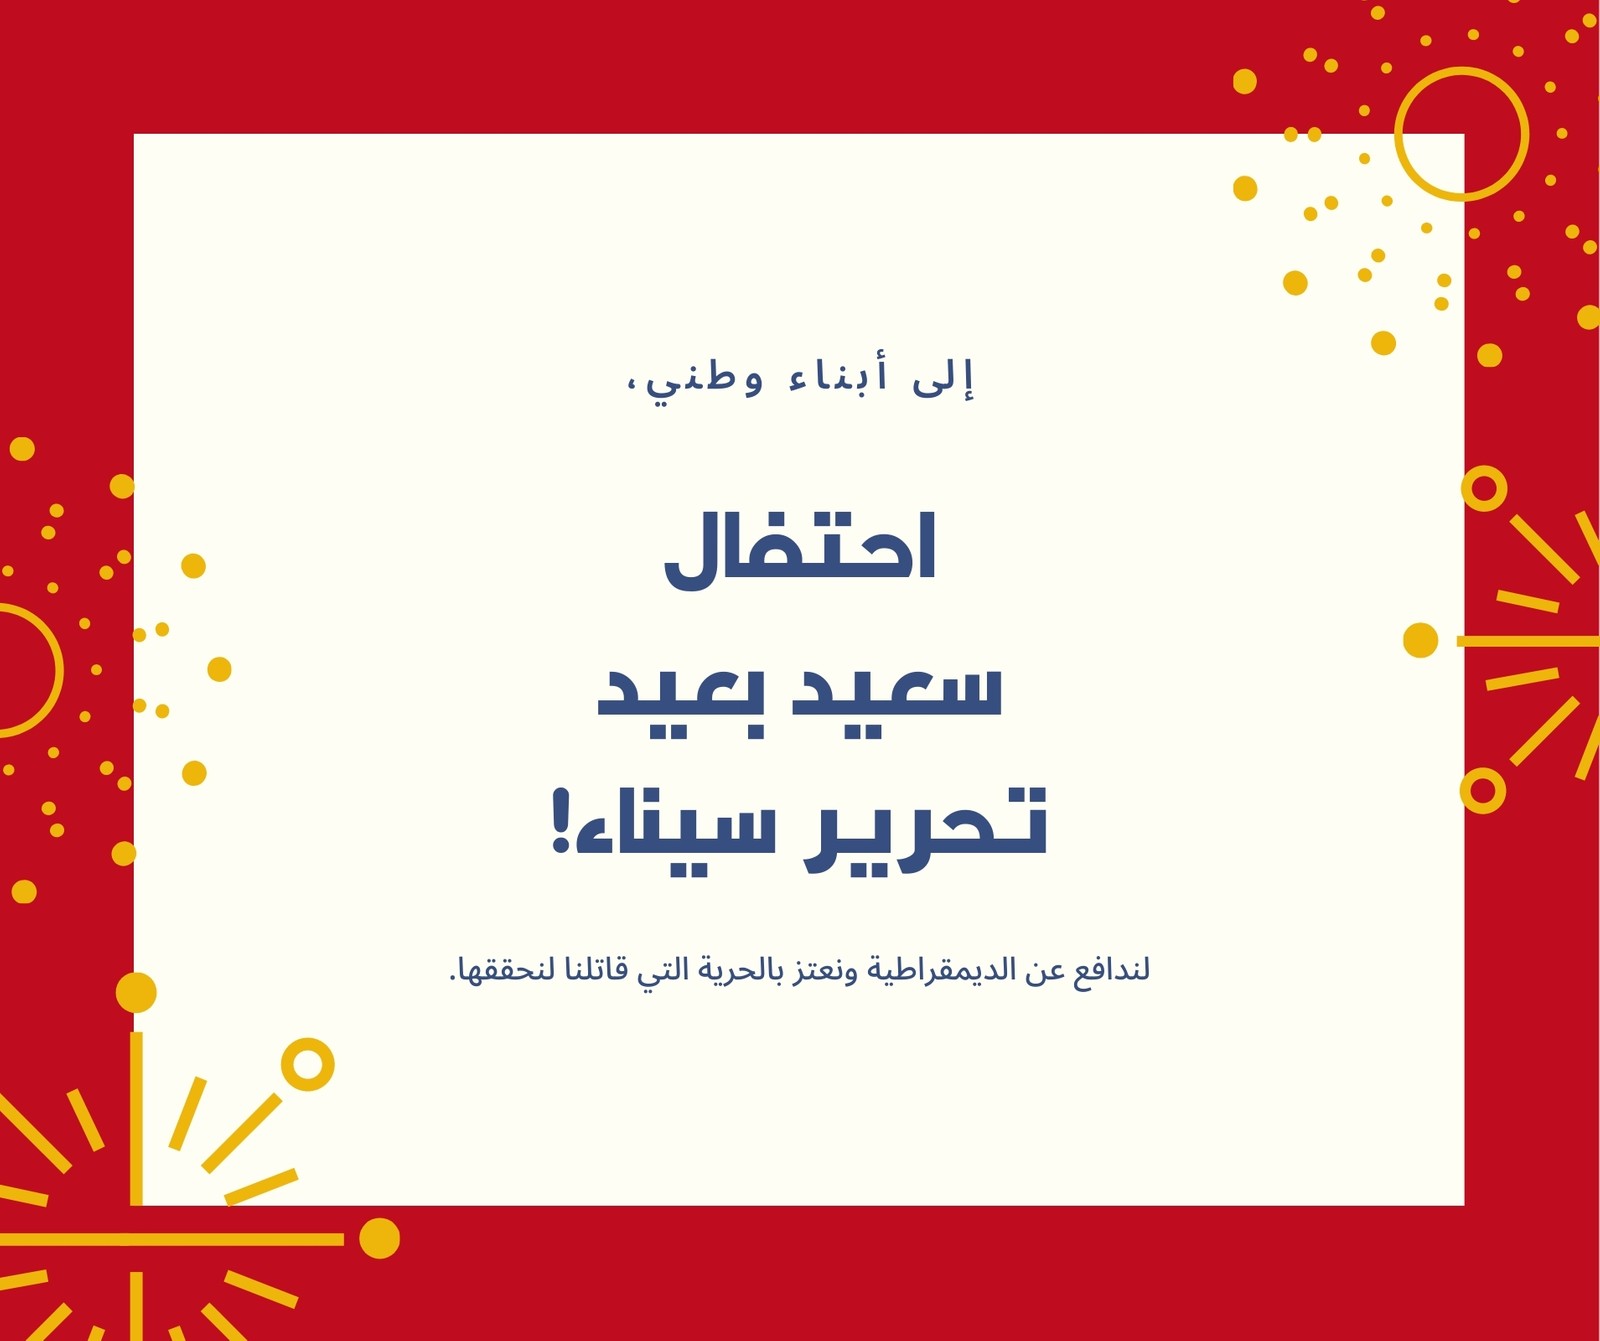 منشور فيسبوك أحمر وأزرق تهنئة عيد تحرير سيناء